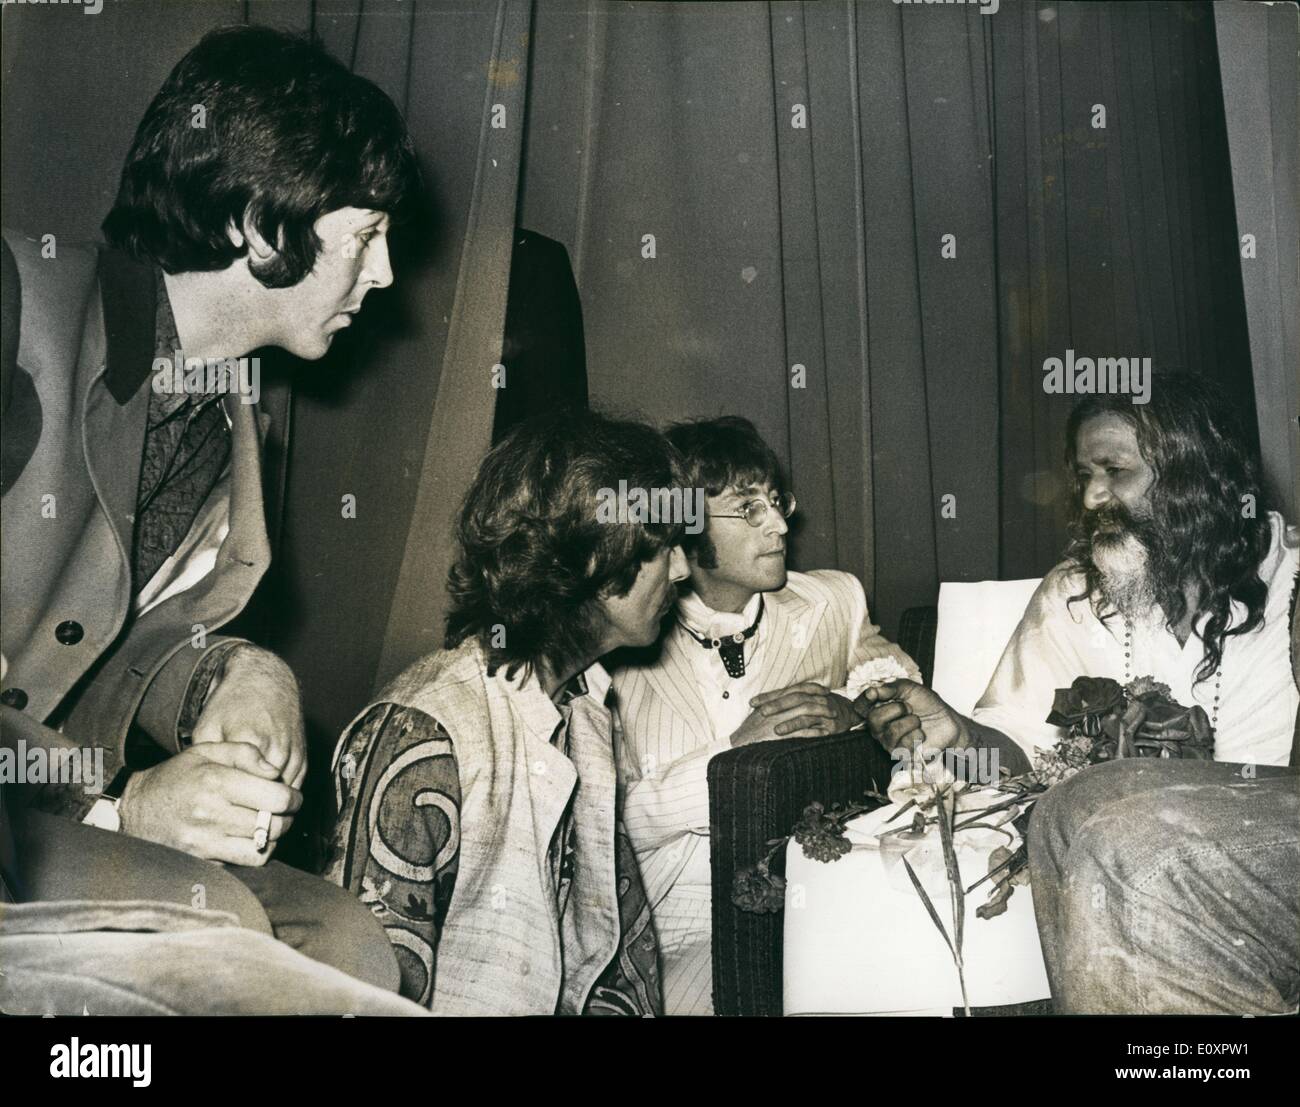 08 août 1967 - Trois des Beatles assister Conférence par Maharishi Mahesh Yogi : Maharishi Mahesh Yogi qui est à Londres pour une visite d'adieu à sa huitième et dernière tournée mondiale, après quoi il se retire de la vie publique, la nuit dernière, a parlé sur le rôle essentiel de la méditation transcendantale dans la vie moderne, à une conférence publique à l'hôtel Hilton de Londres. Parmi ceux qui nous écoutent à lui trois des Beatles, Paul McCartney, John Lennon et George Harrison Banque D'Images